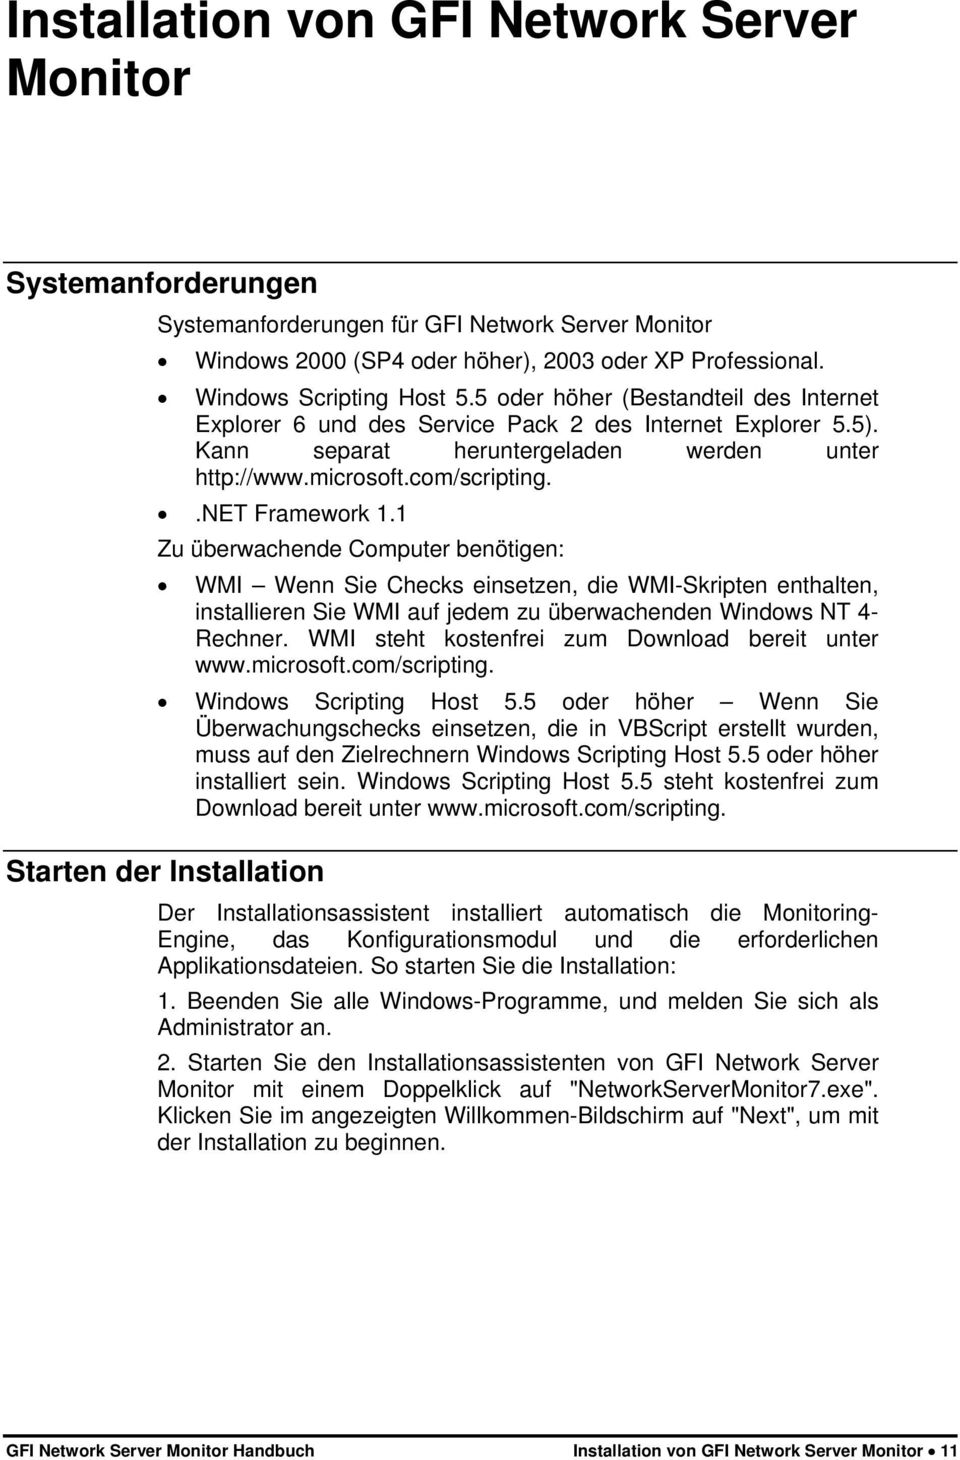 1 Zu überwachende Computer benötigen: WMI Wenn Sie Checks einsetzen, die WMI-Skripten enthalten, installieren Sie WMI auf jedem zu überwachenden Windows NT 4- Rechner.